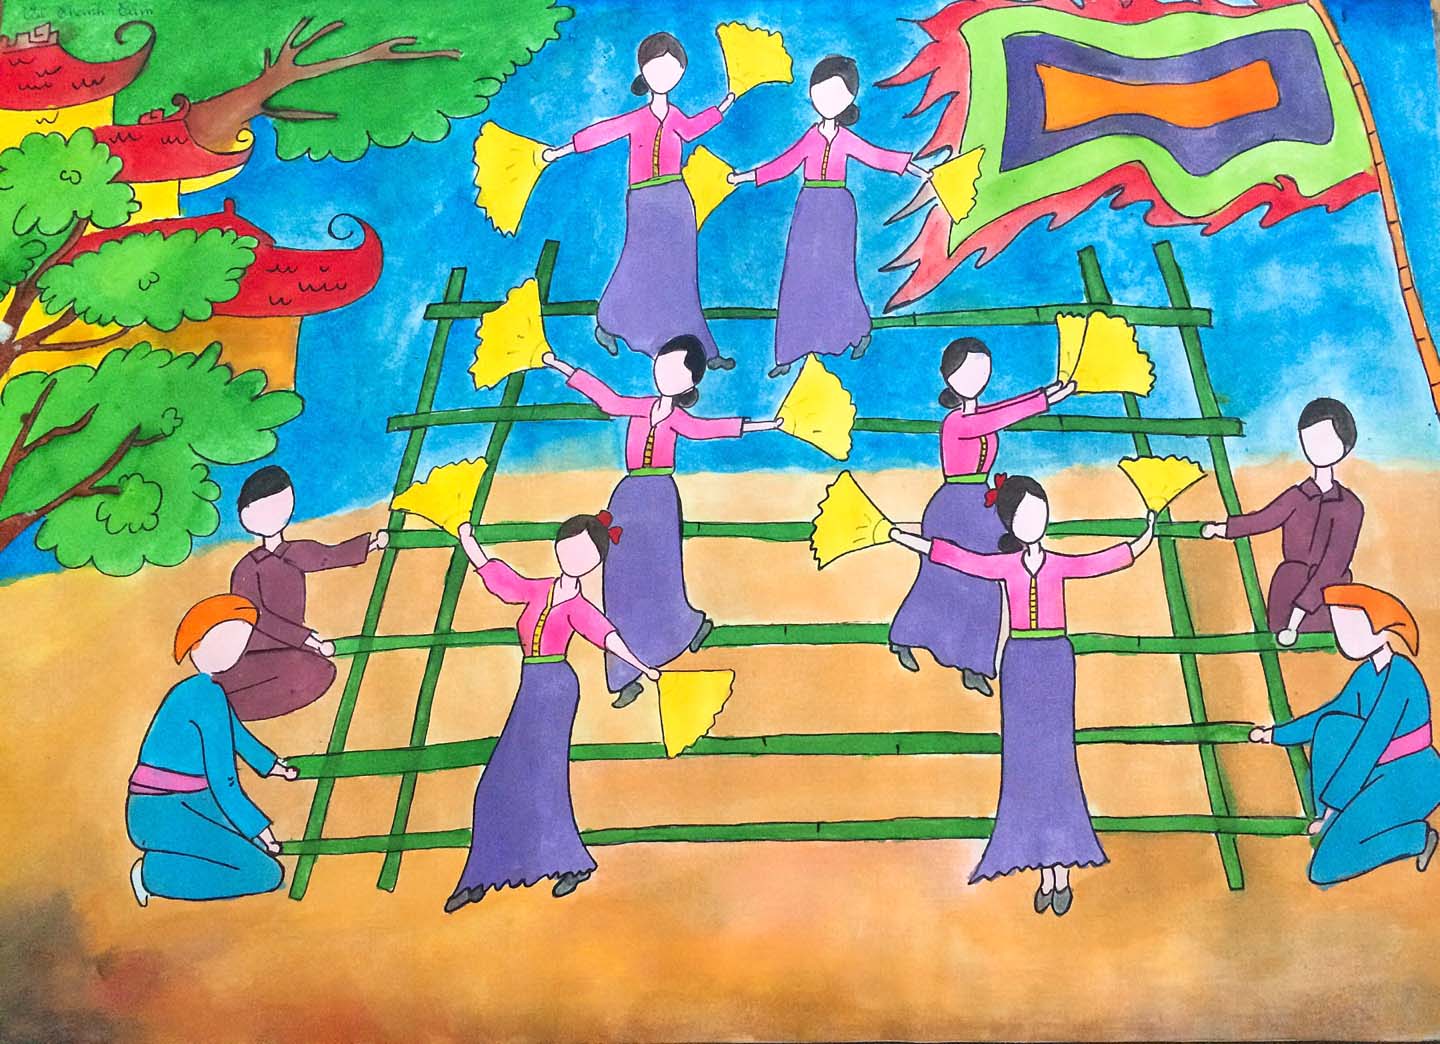 50 Hình vẽ tranh đề tài lễ hội trung thu đơn giản dễ dàng nhất  Trường  THPT Diễn Châu 2  Nghệ An